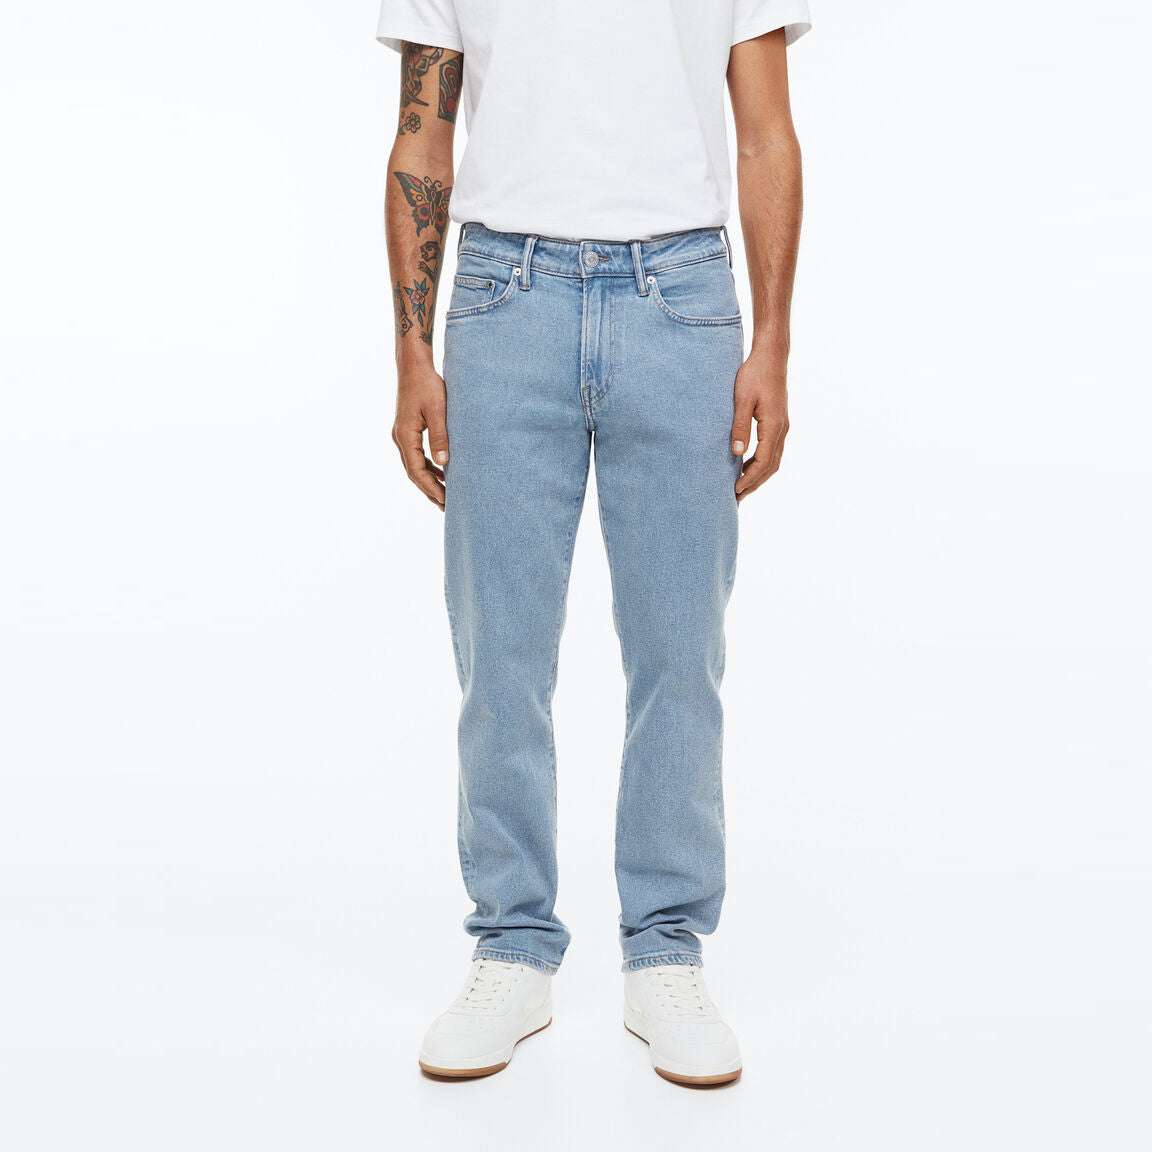 Celana Jeans Pria Denim Tersedia 3 Warna [HMJM 01]